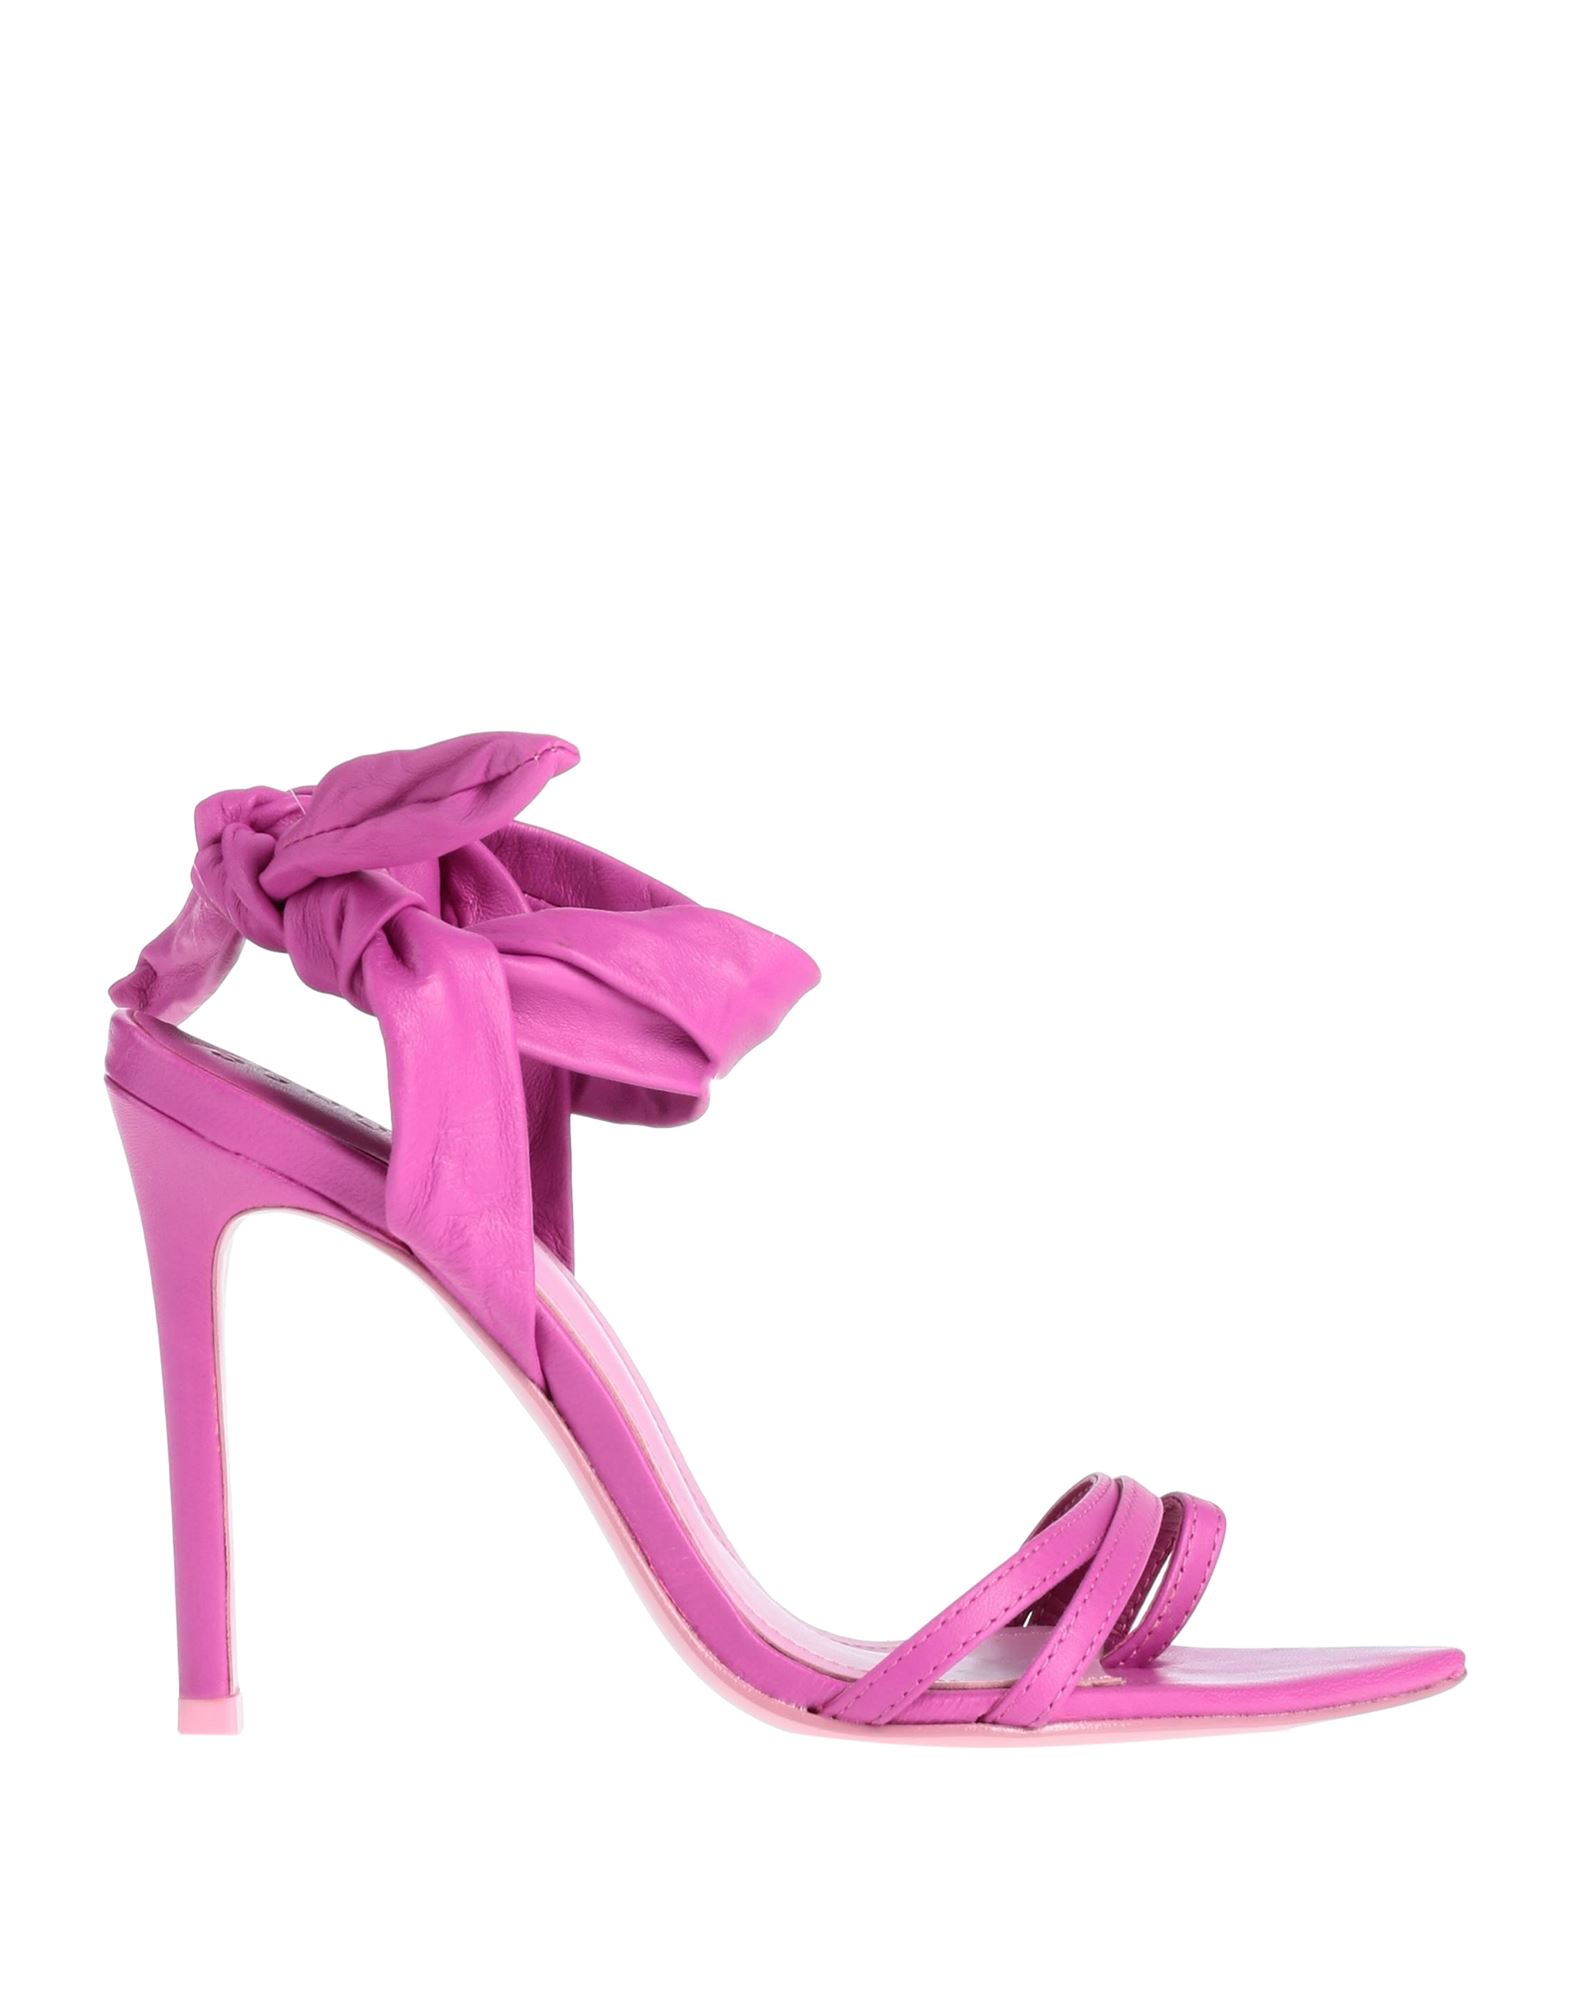 Schutz Toe Strap Sandals In Pink